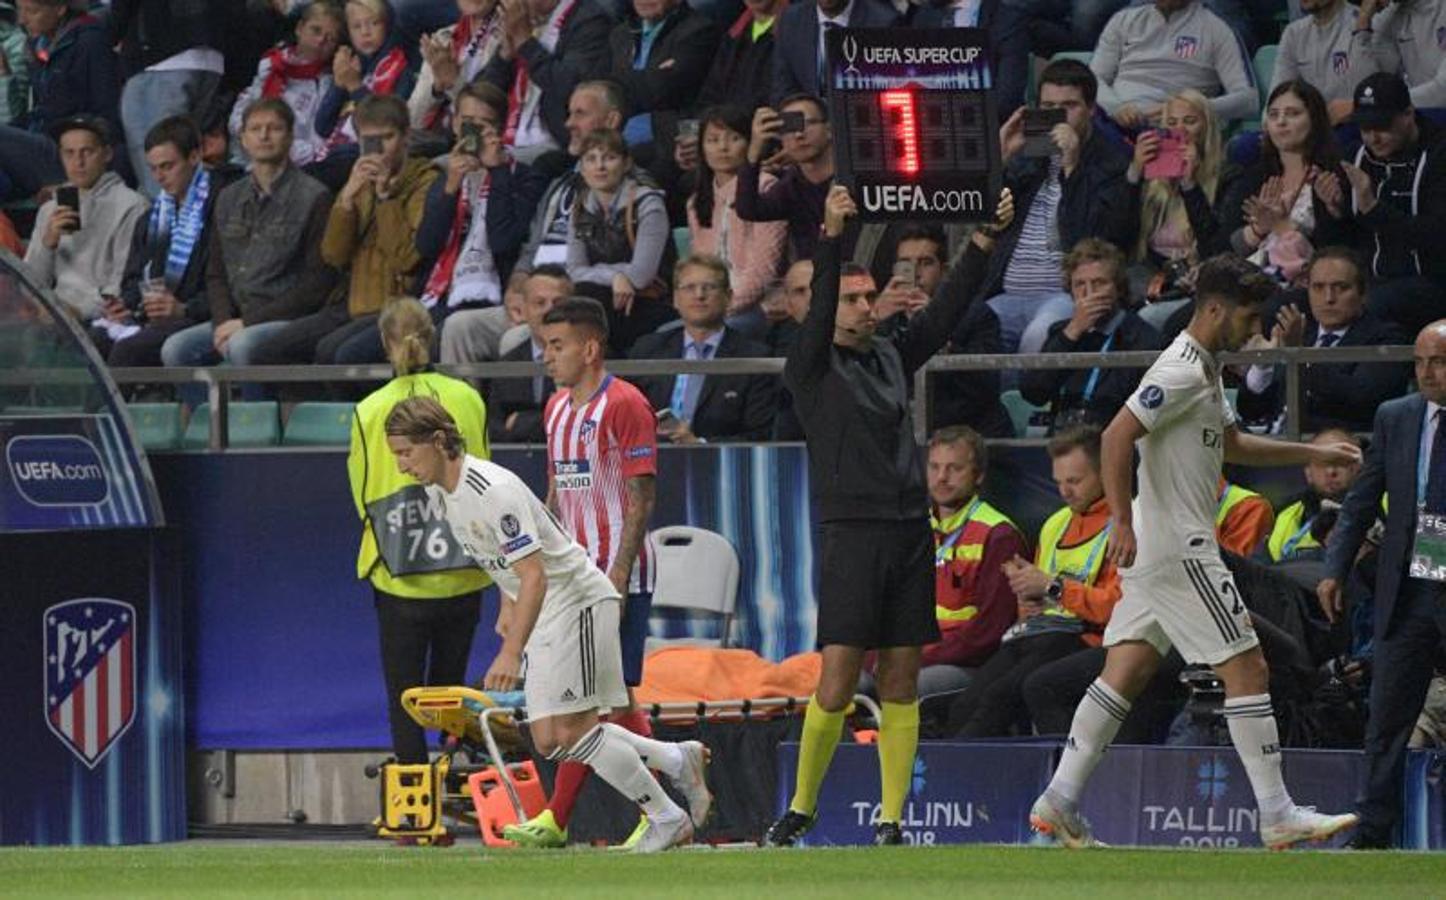 El Real Madrid y el Atlético se enfrentan en Tallín por el primer título oficial de la temporada